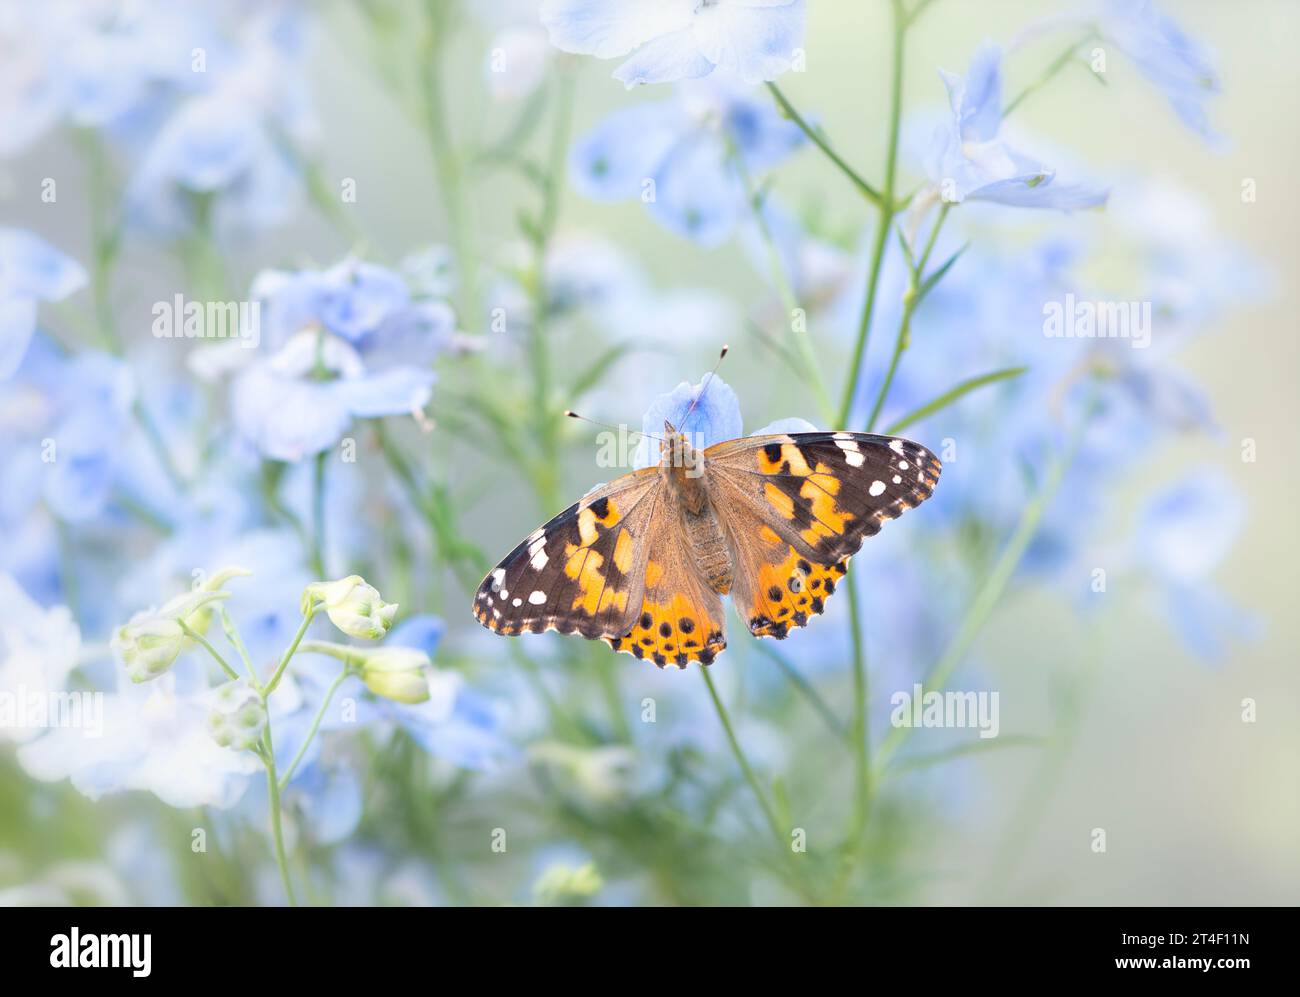 Macro d'une dame papillon peinte (vanessa cardui) reposant sur des fleurs de delphinium bleu. Vue de dessus avec ailes écartées ouvertes. Banque D'Images